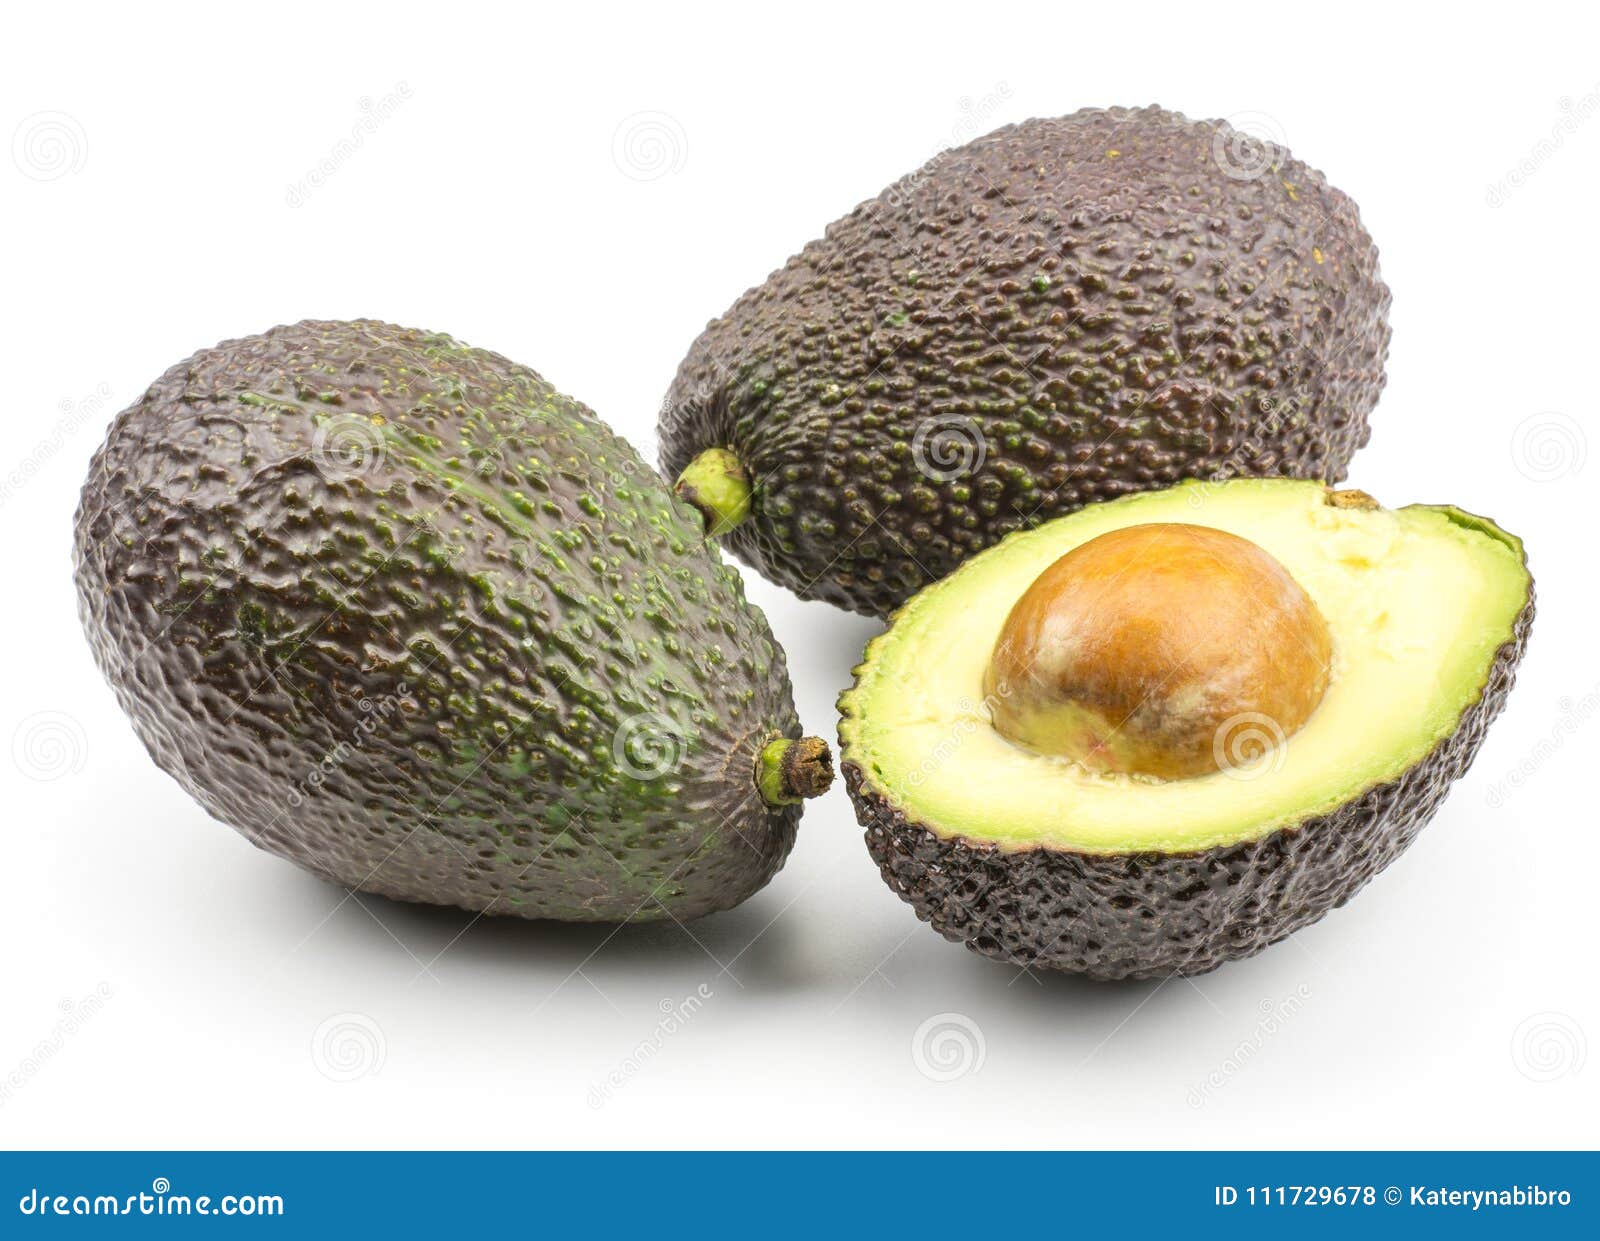 fresh raw avocado  on white